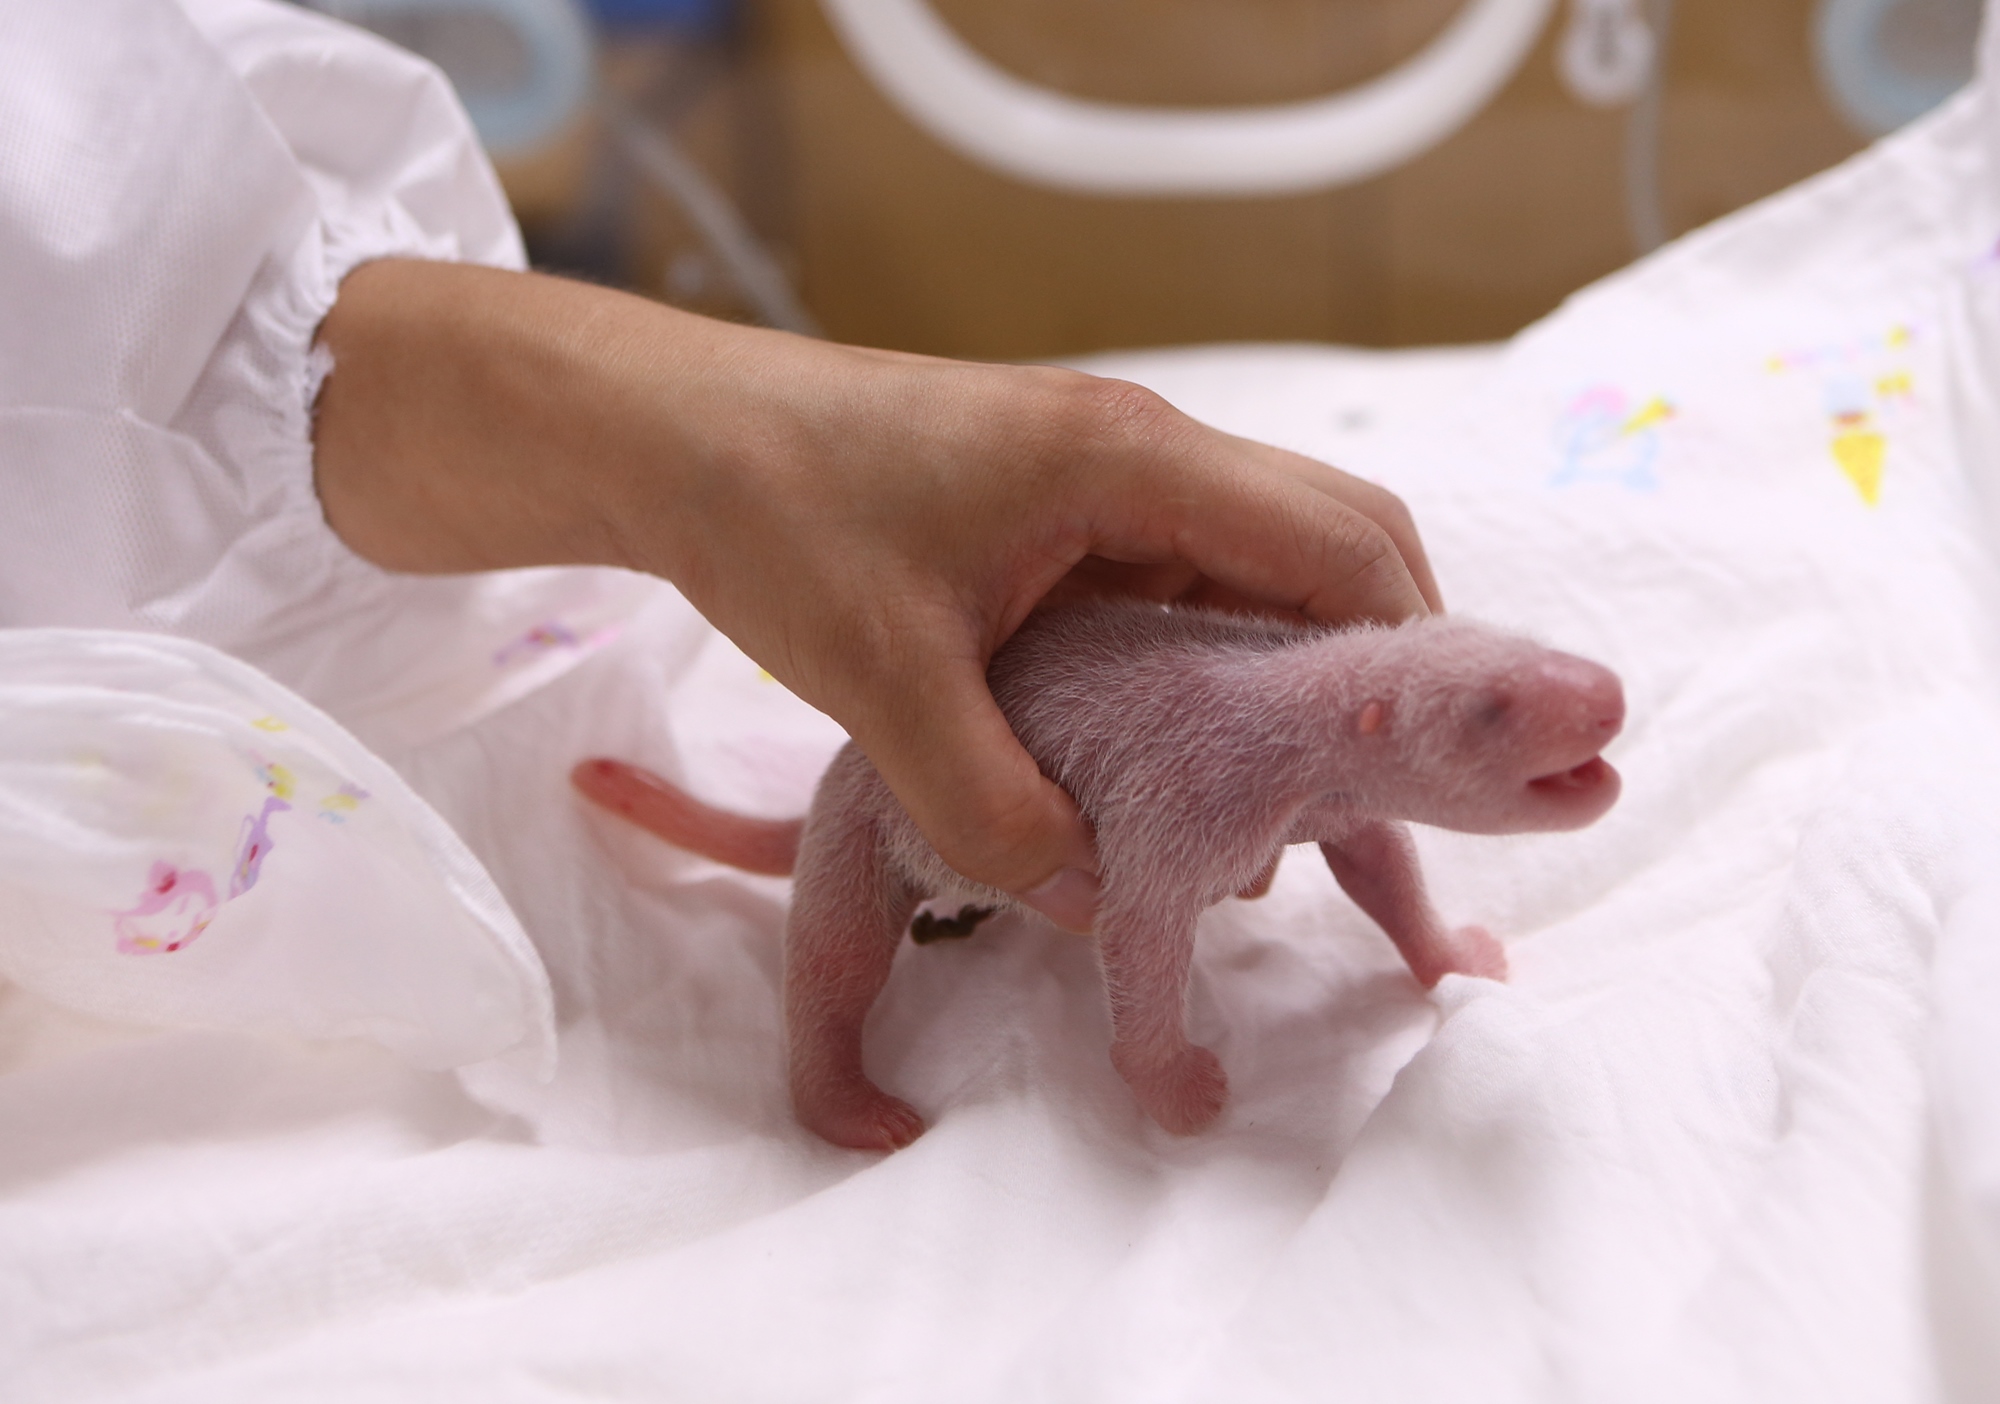 지난 20일 에버랜드에서 국내 유일의 판다 한 쌍 암컷인 아이바오(7세)와 수컷 러바오(8세) 사이에서 태어난 암컷 아기 판다. 국내에서 판다가 자연번식에 성공해 출산한 것은 이번이 처음이다. 에버랜드 제공